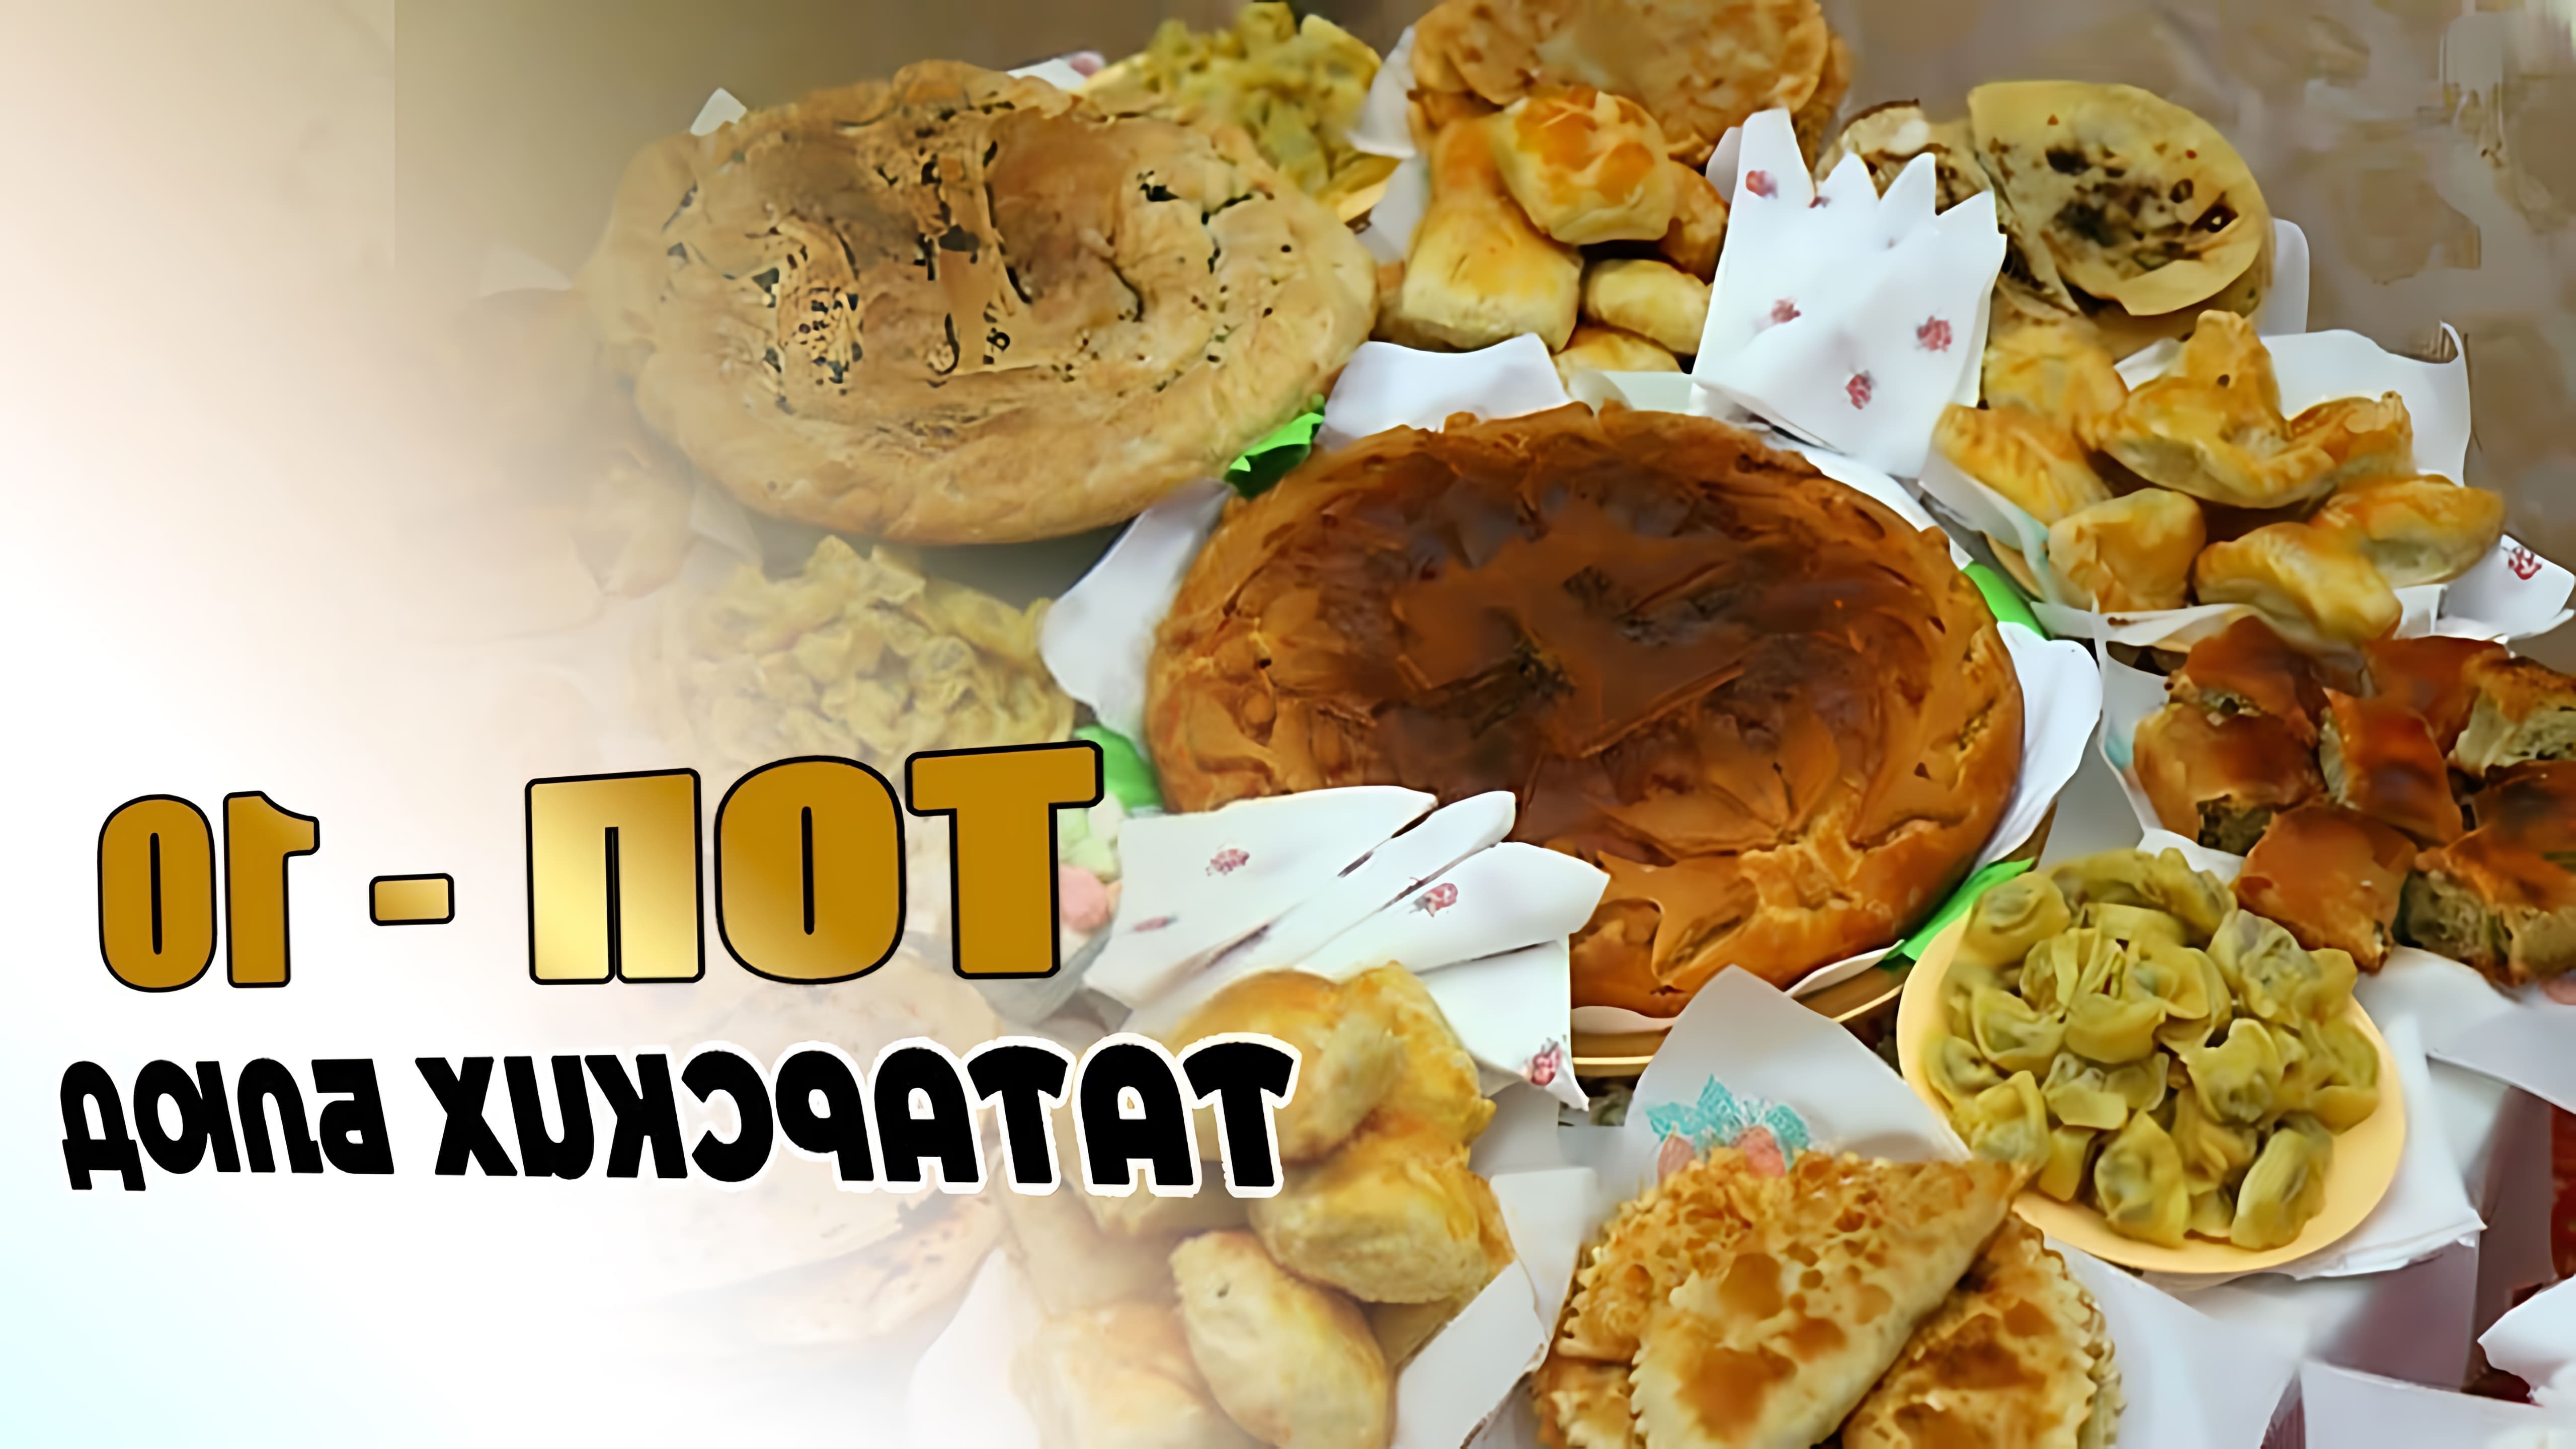 В этом видео рассказывается о десяти самых популярных татарских блюдах